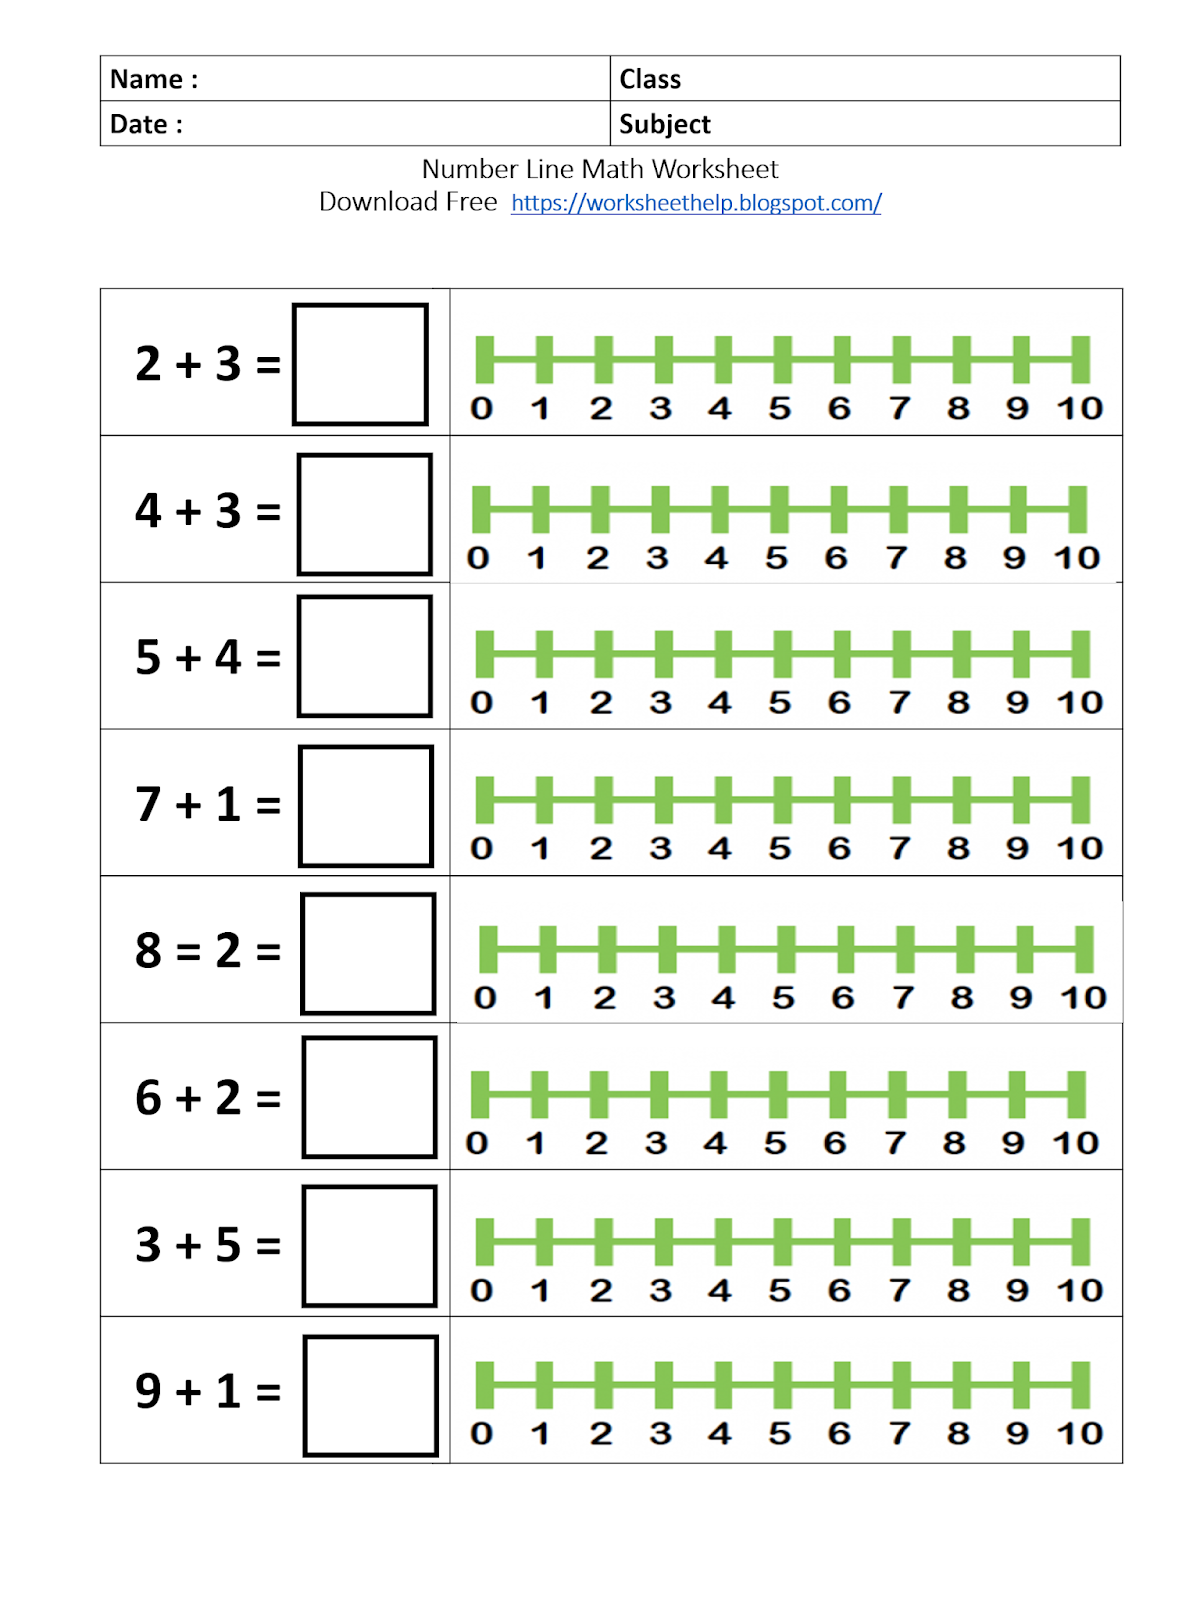 Number Line Math Worksheet Grade 1